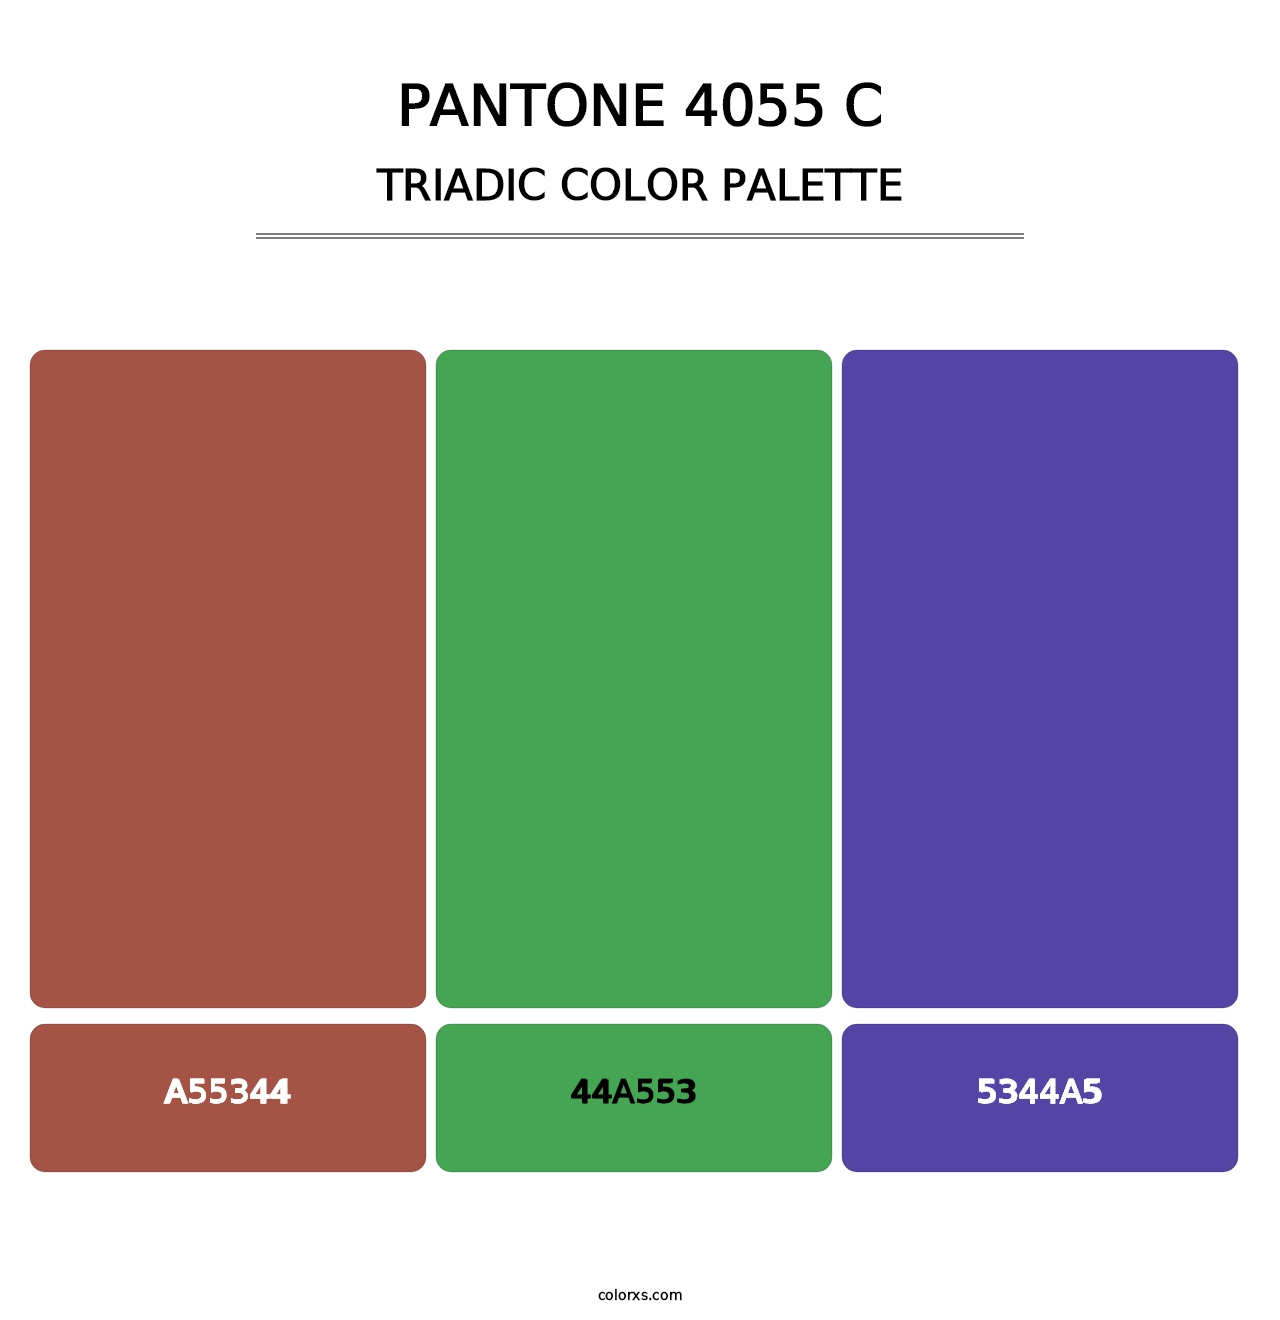 PANTONE 4055 C - Triadic Color Palette